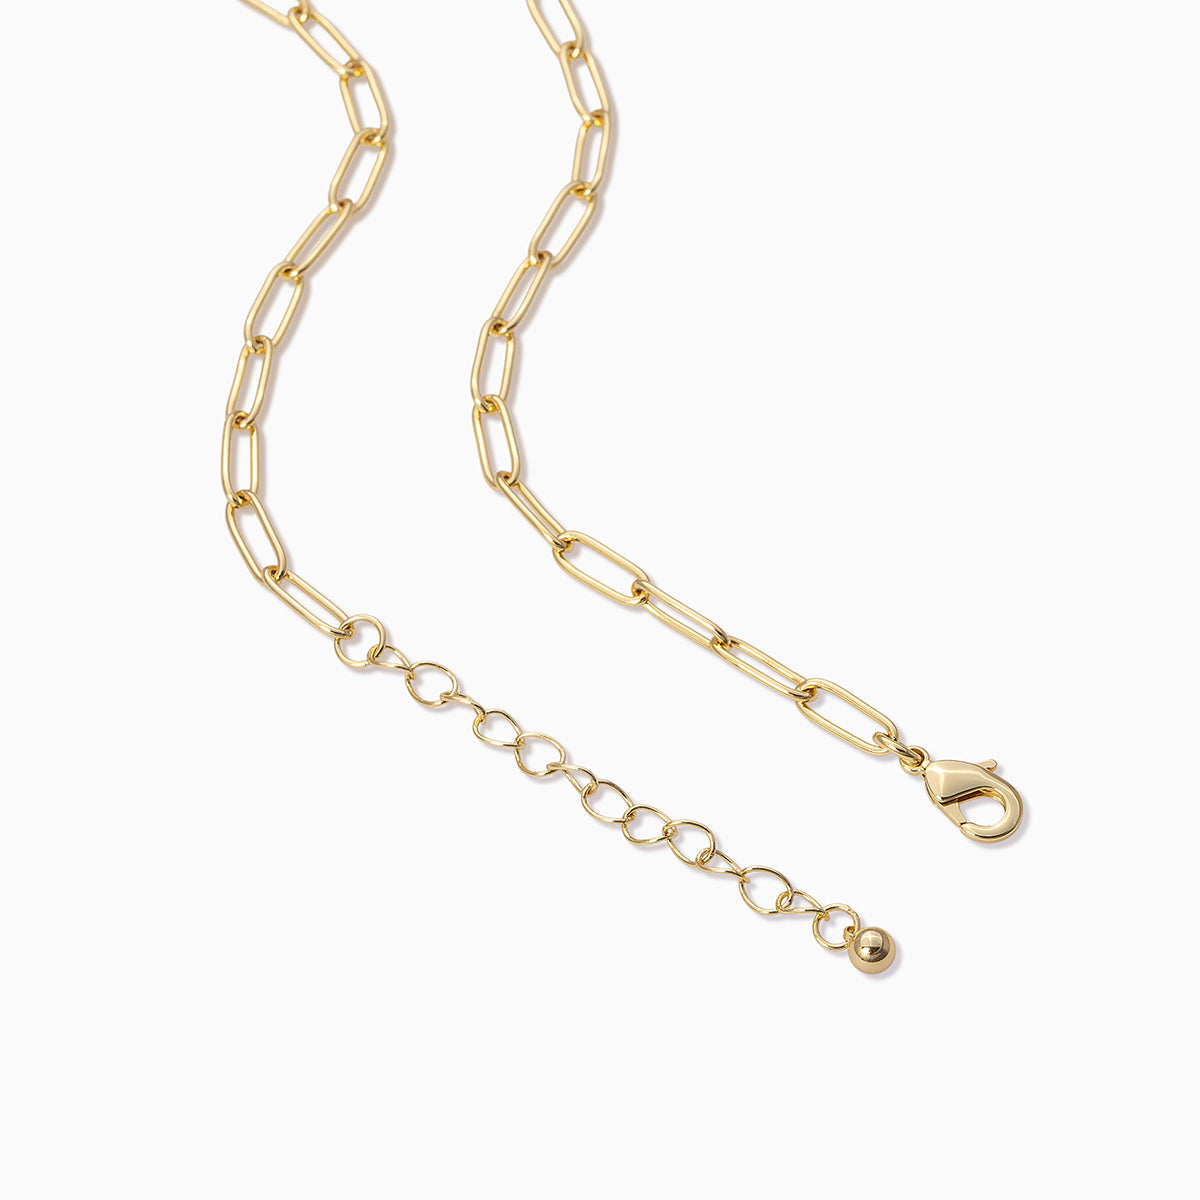 Joie De Vivre Pendant Necklace | Gold | Product Detail Image 2 | Uncommon James